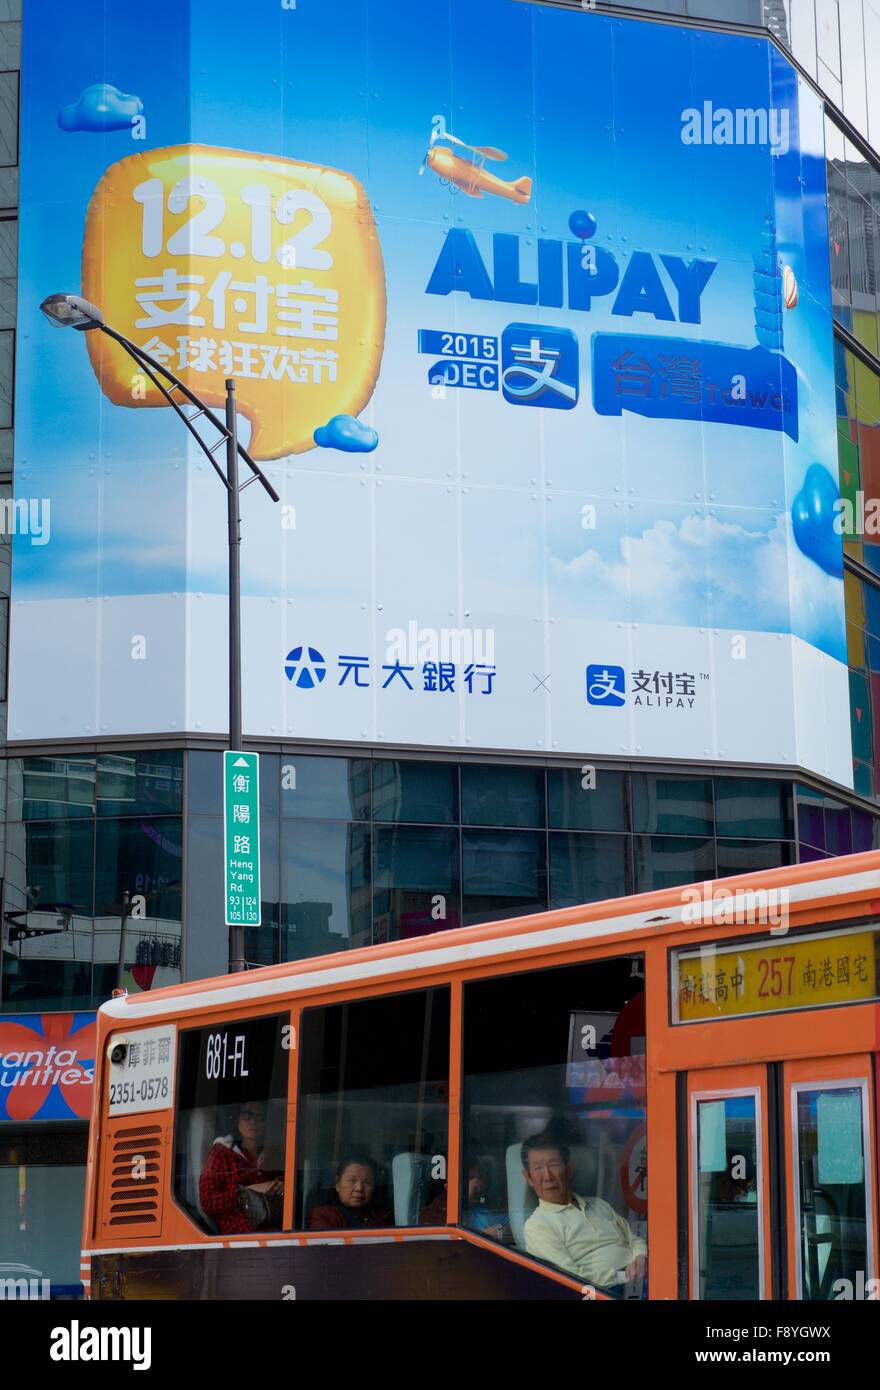 Il Taipei Taiwan. 12 Dic, 2015. Un poster mostra alipay pagamento annuncio a Hengyang strada in Taipei, a sud-est della Cina di Taiwan, Dic 12, 2015. Secondo Alipay, il servizio di pagamento online fornitore del Gruppo Alibaba, 3.500 imprese commerciali di Taiwan hanno accettato il pagamento Alipay poiché la promozione è iniziata il 1 dic. © Jiang Kehong/Xinhua/Alamy Live News Foto Stock